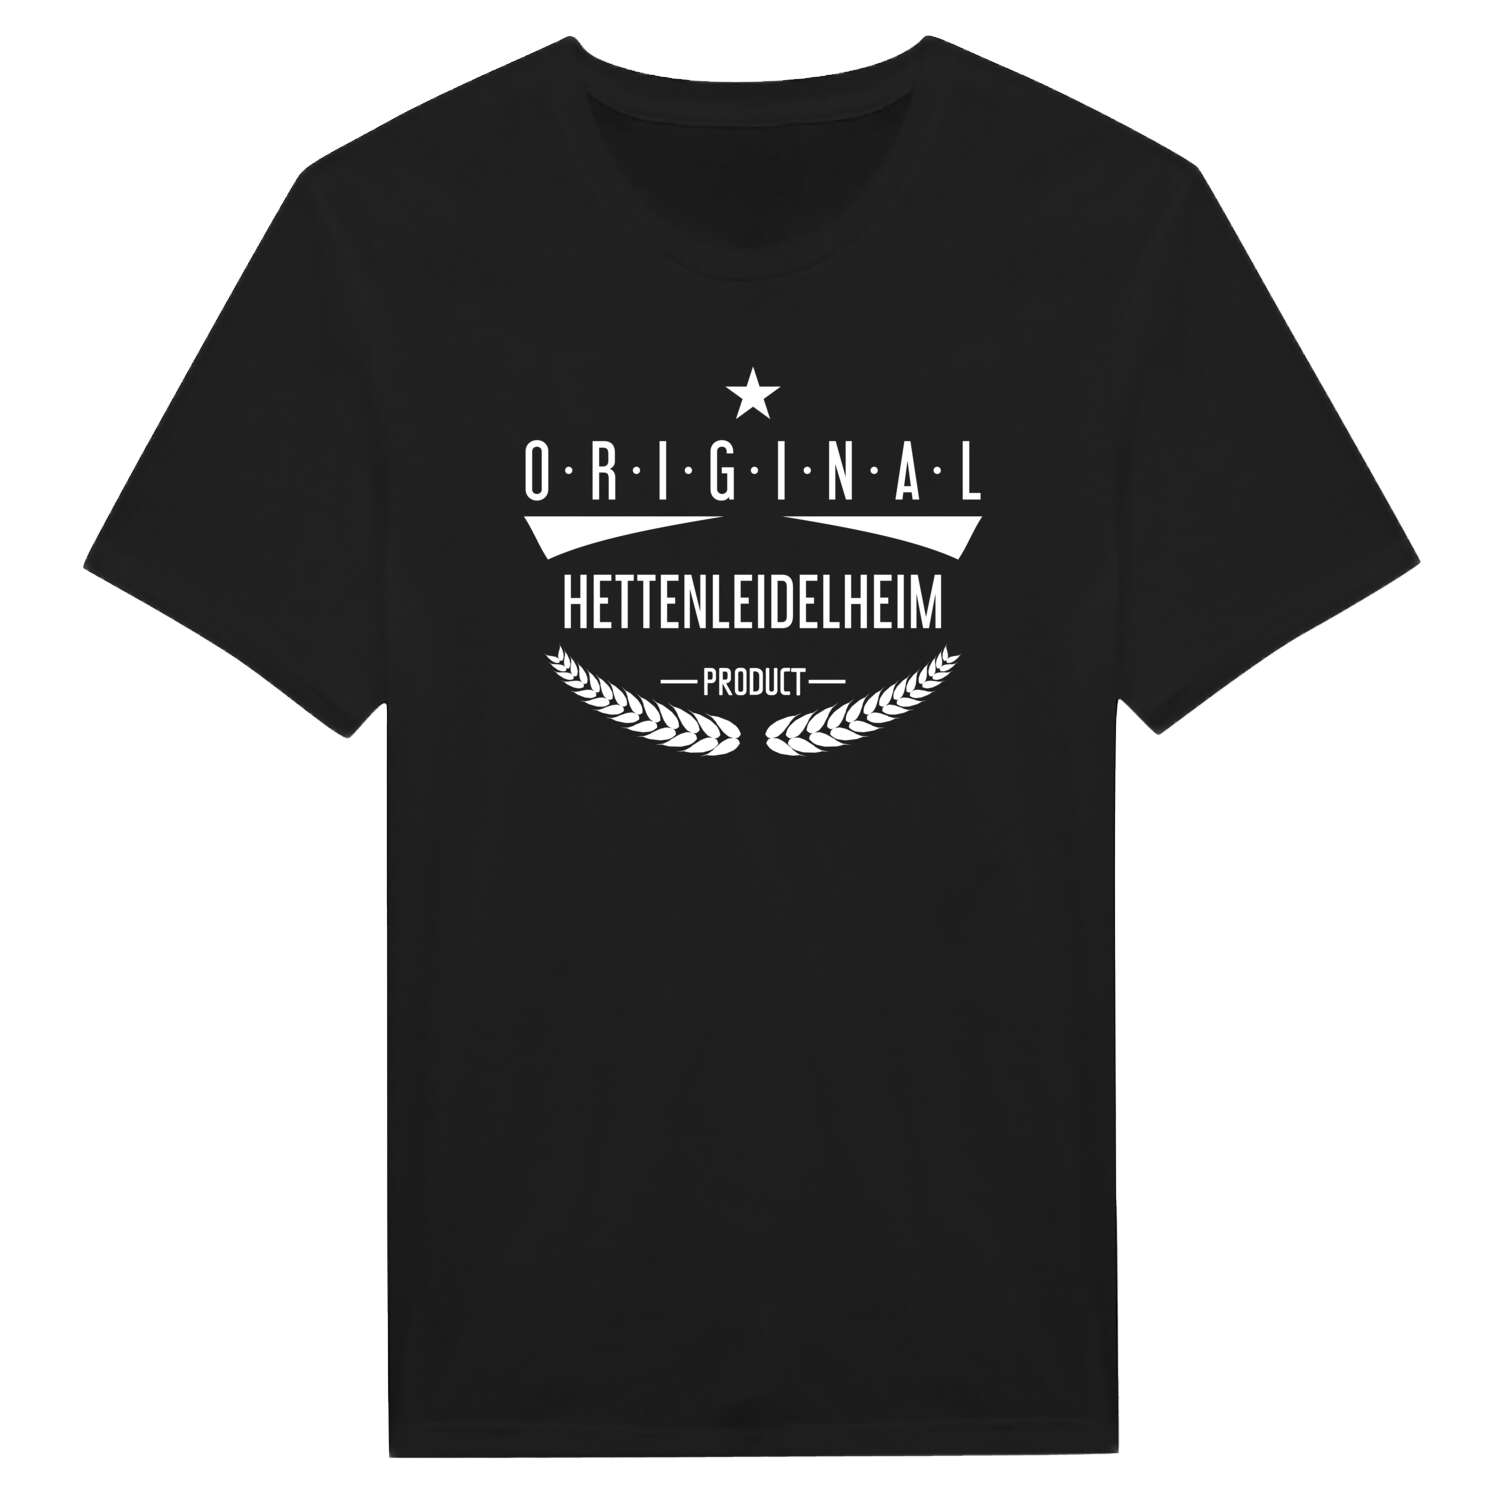 Hettenleidelheim T-Shirt »Original Product«